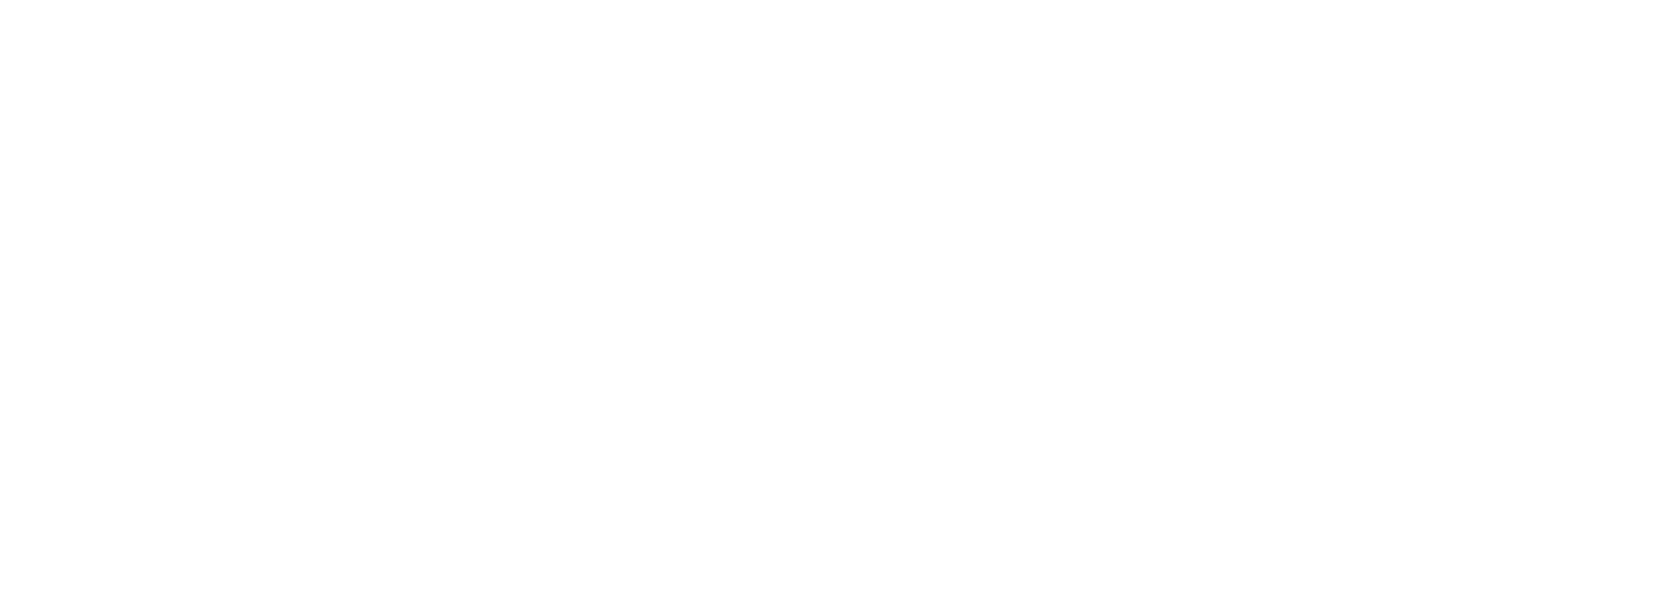 UNited Women of Influence Magazine